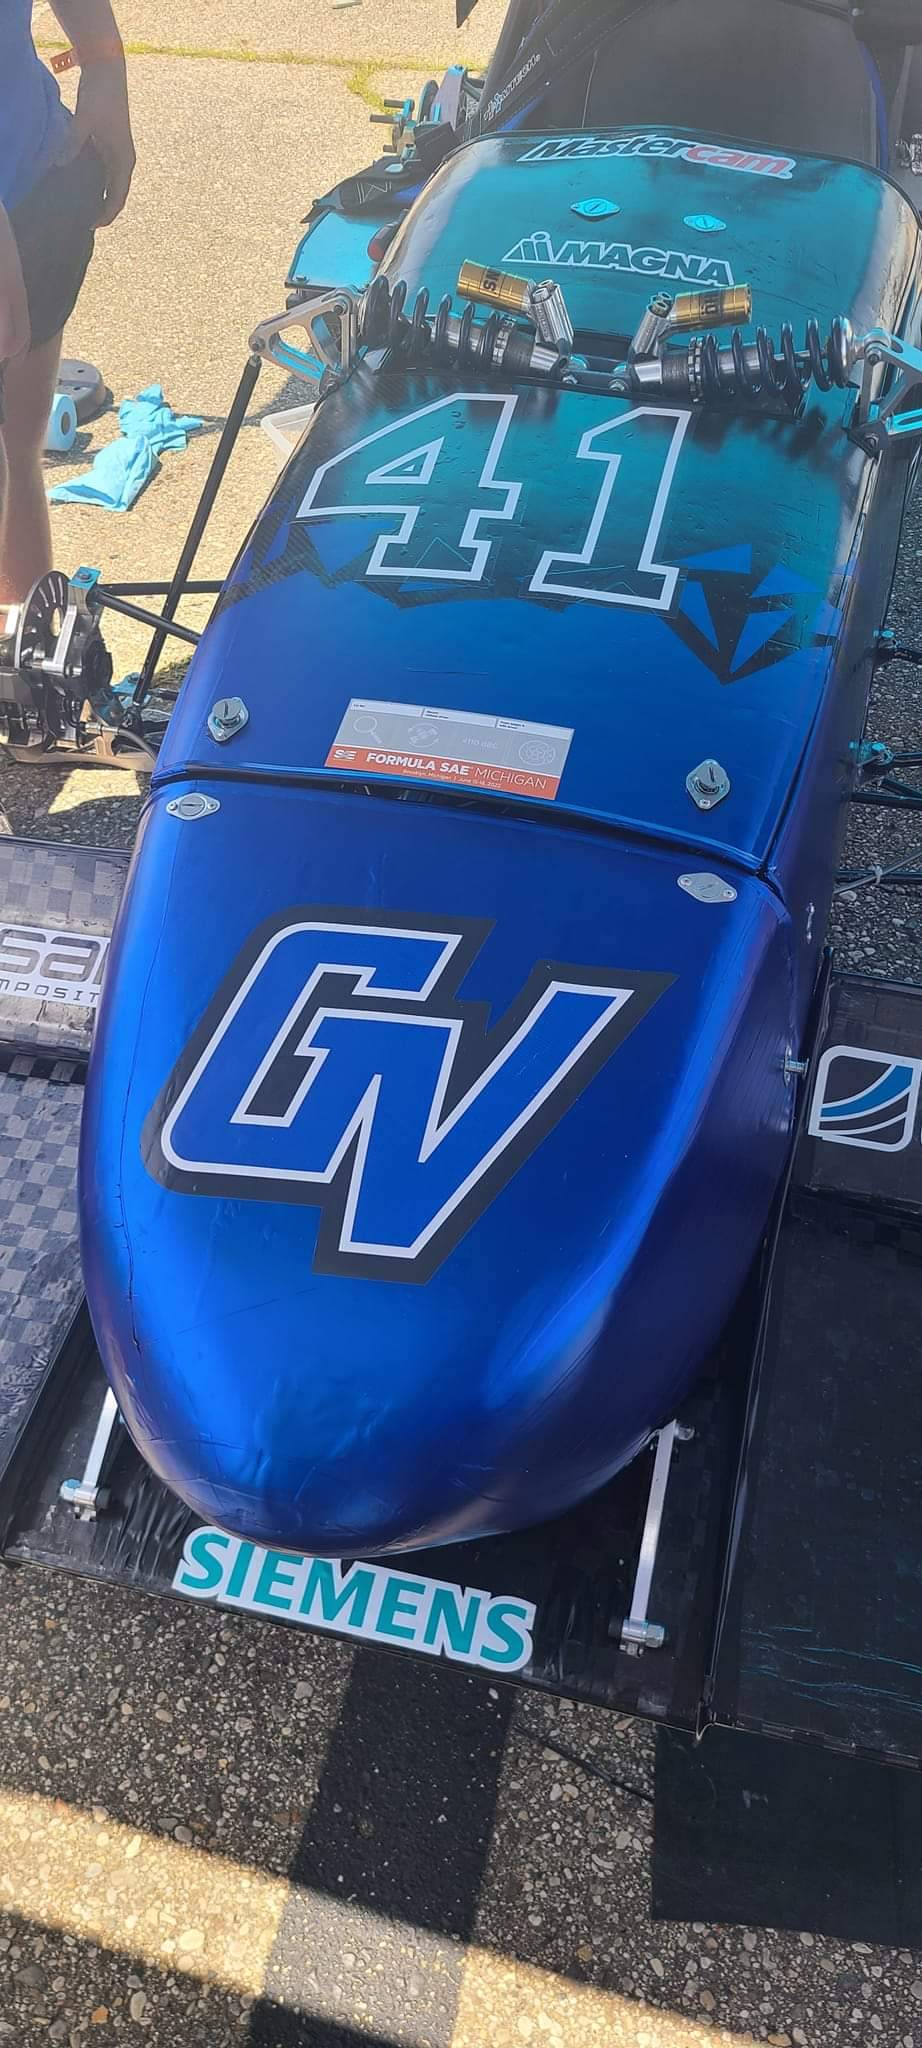 GVSU racing car model